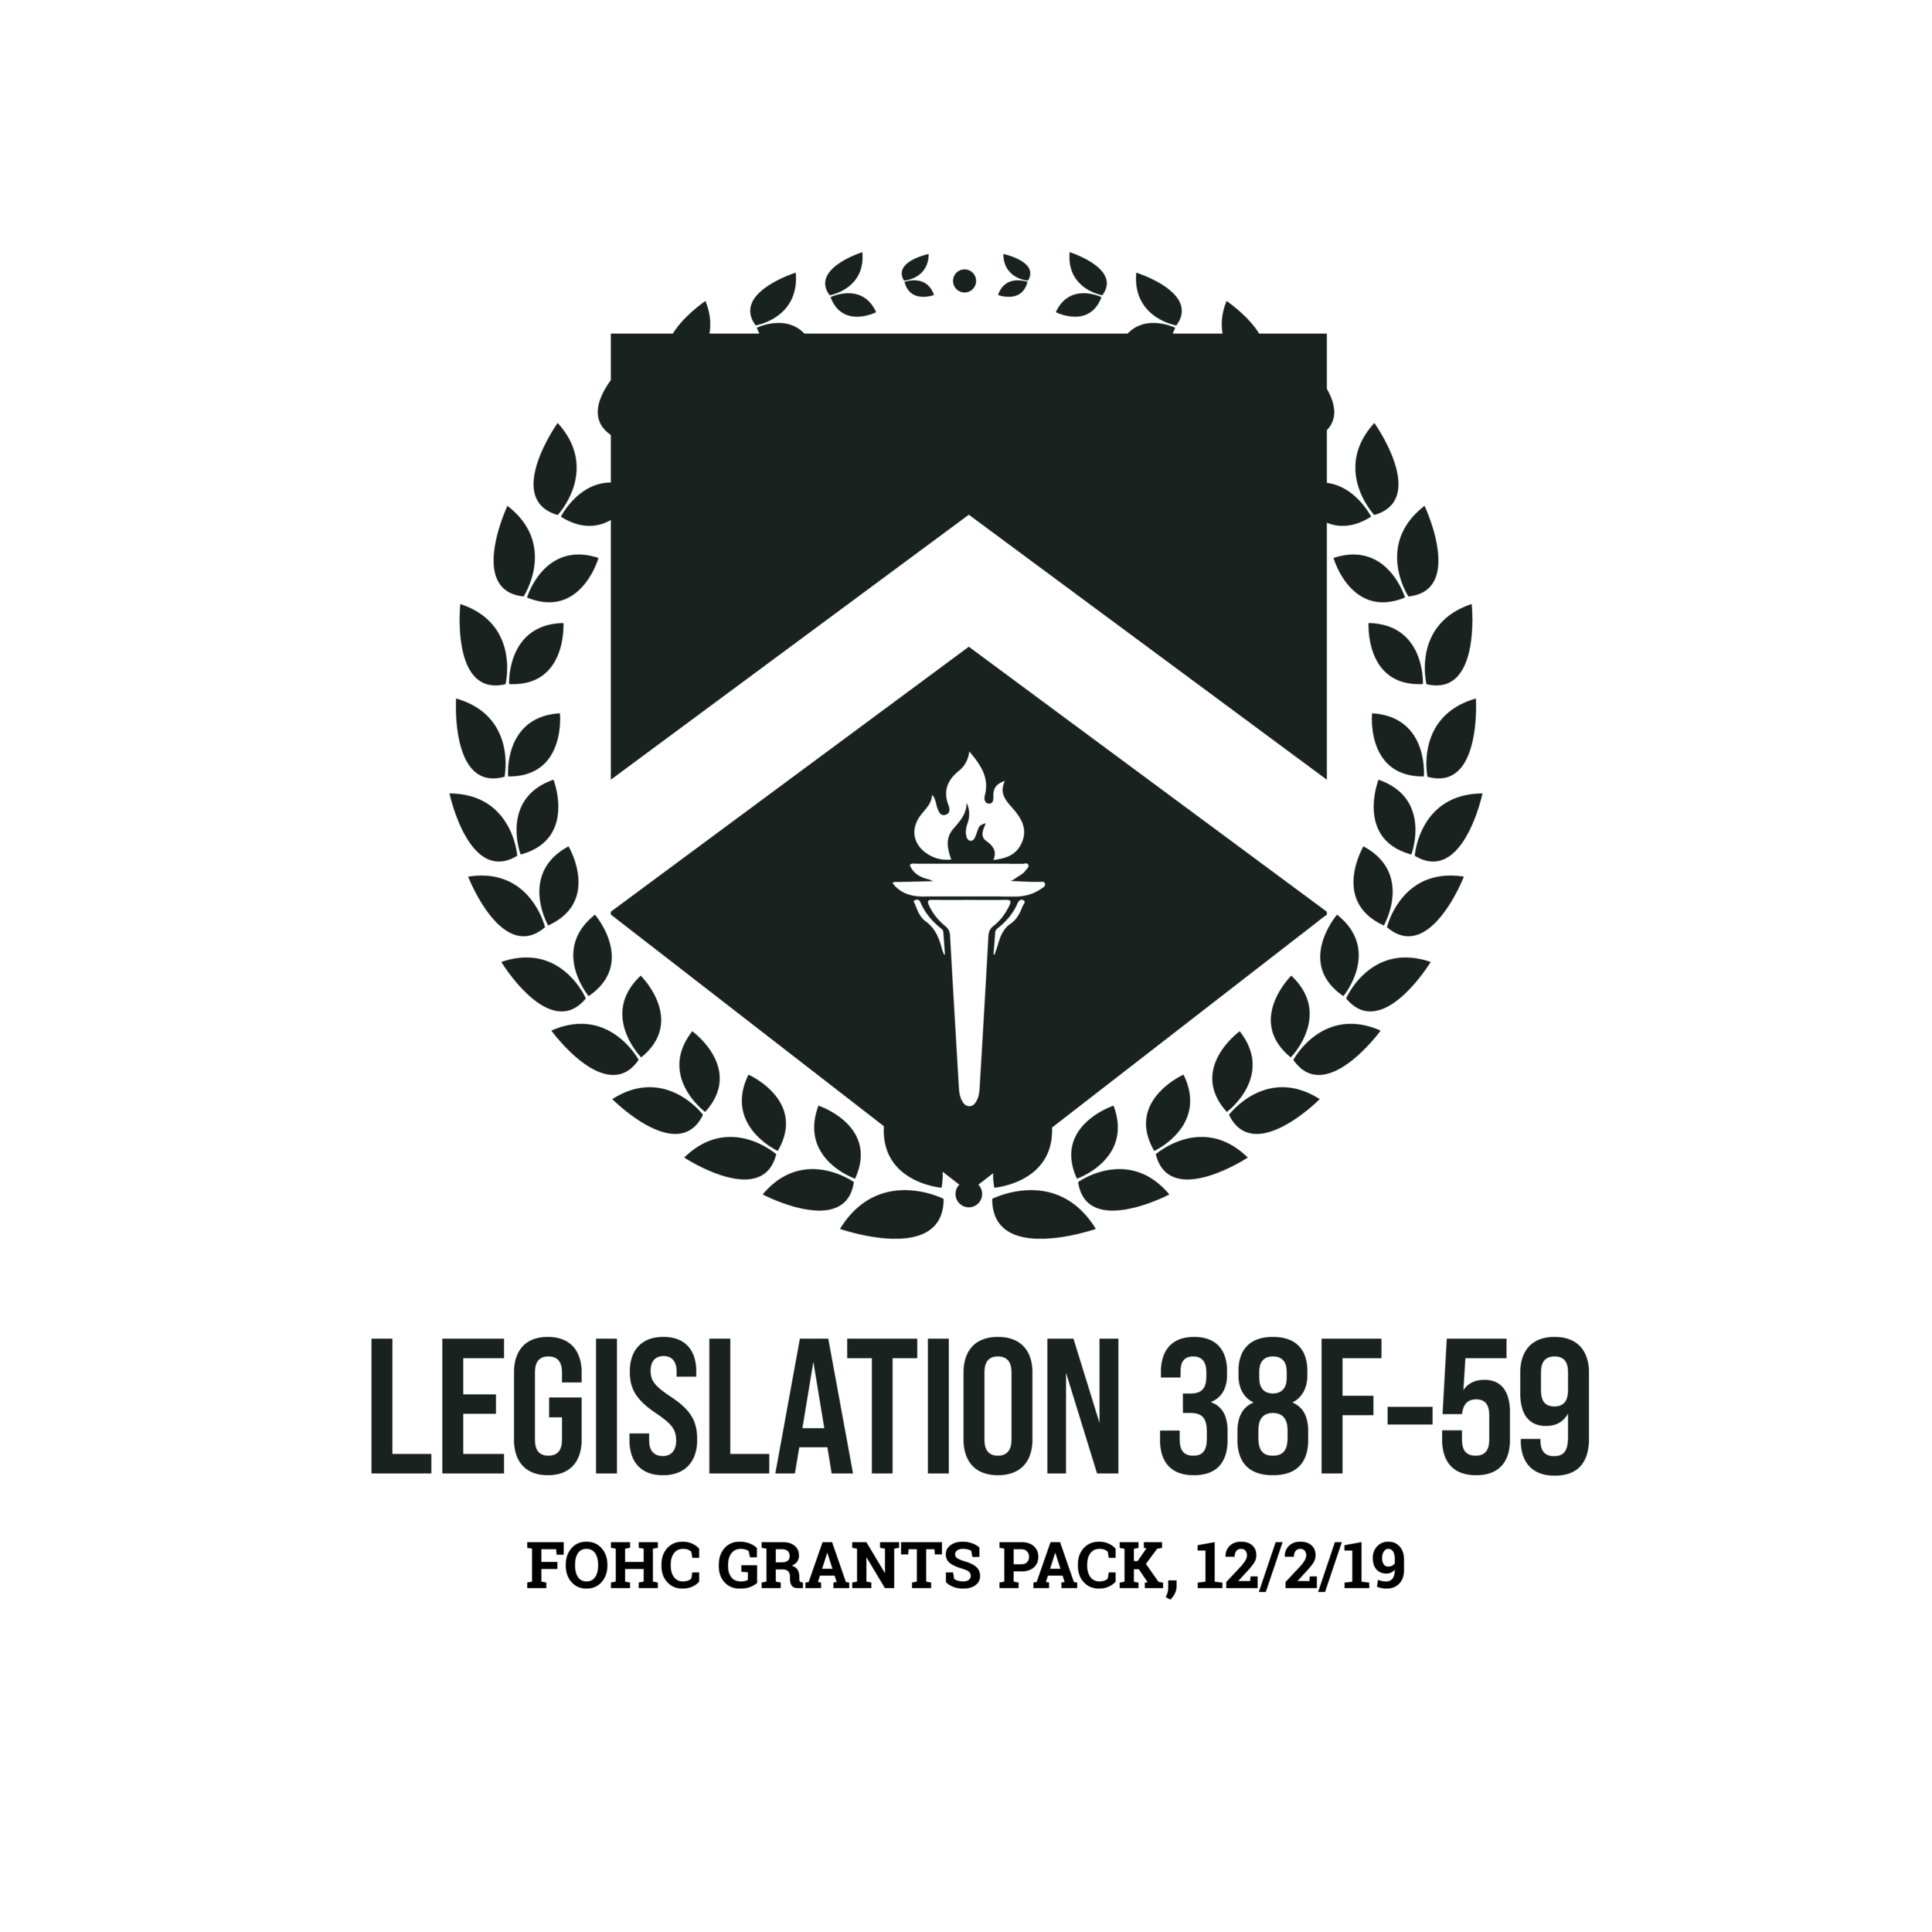 Legislation 38F-59: PASSED